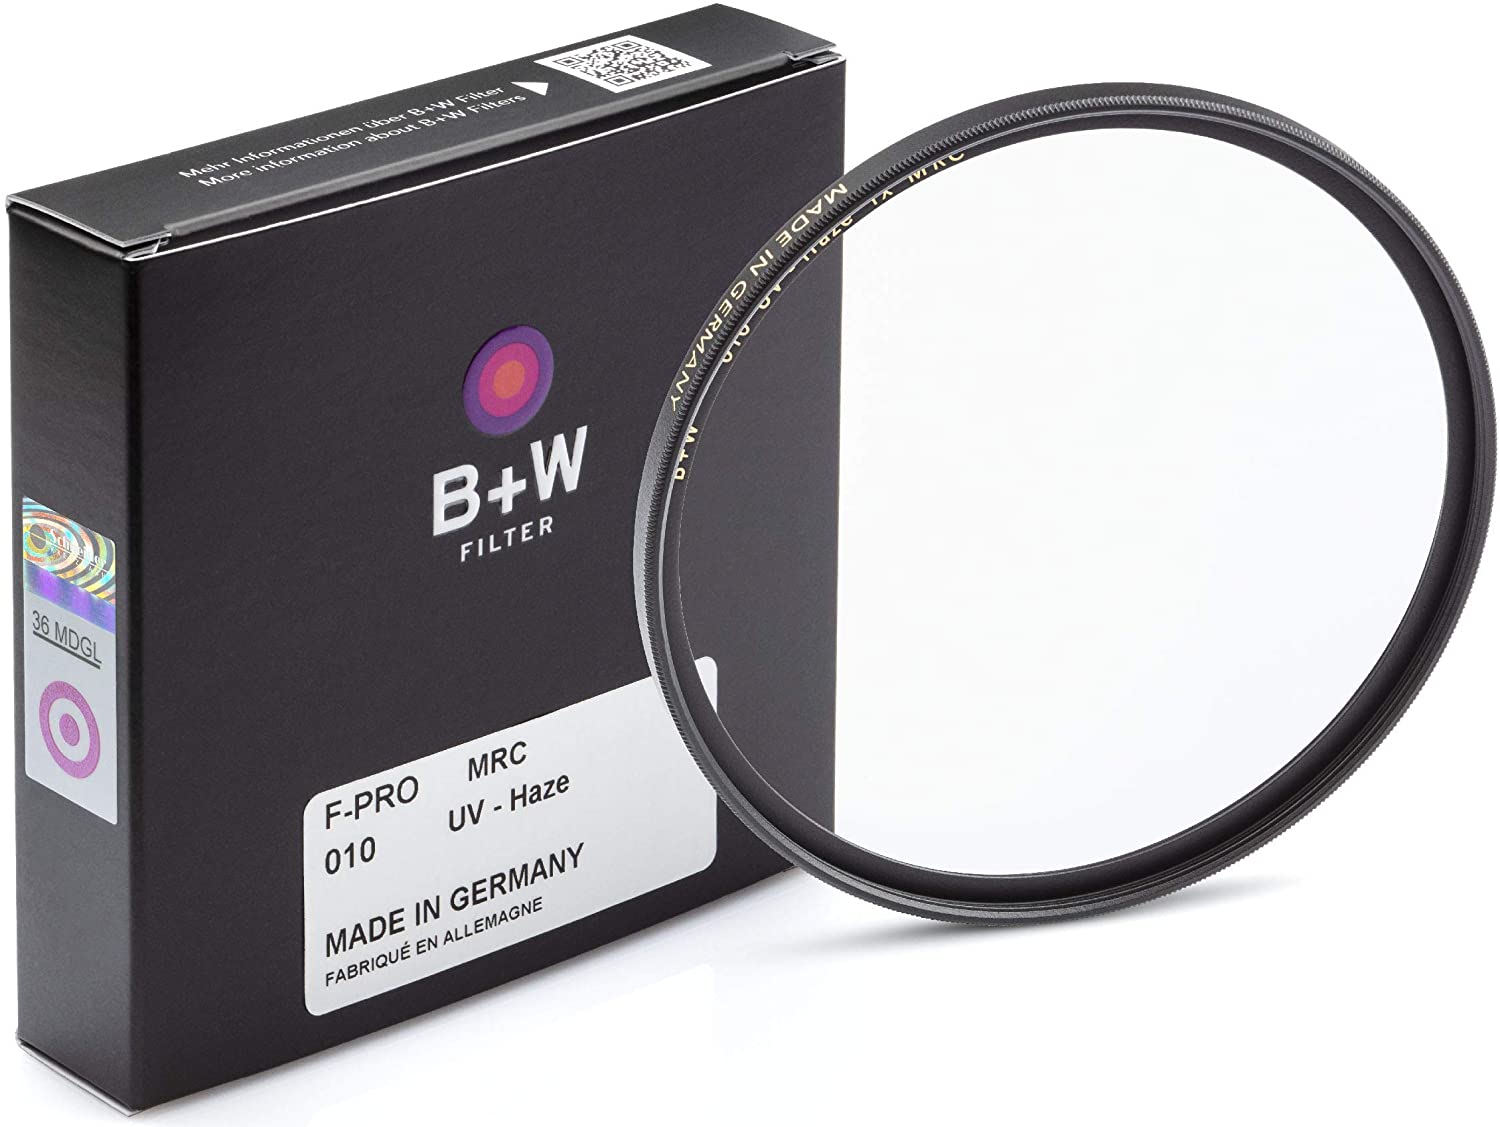 B+W Filter UVa F-PRO MRC - 60mm